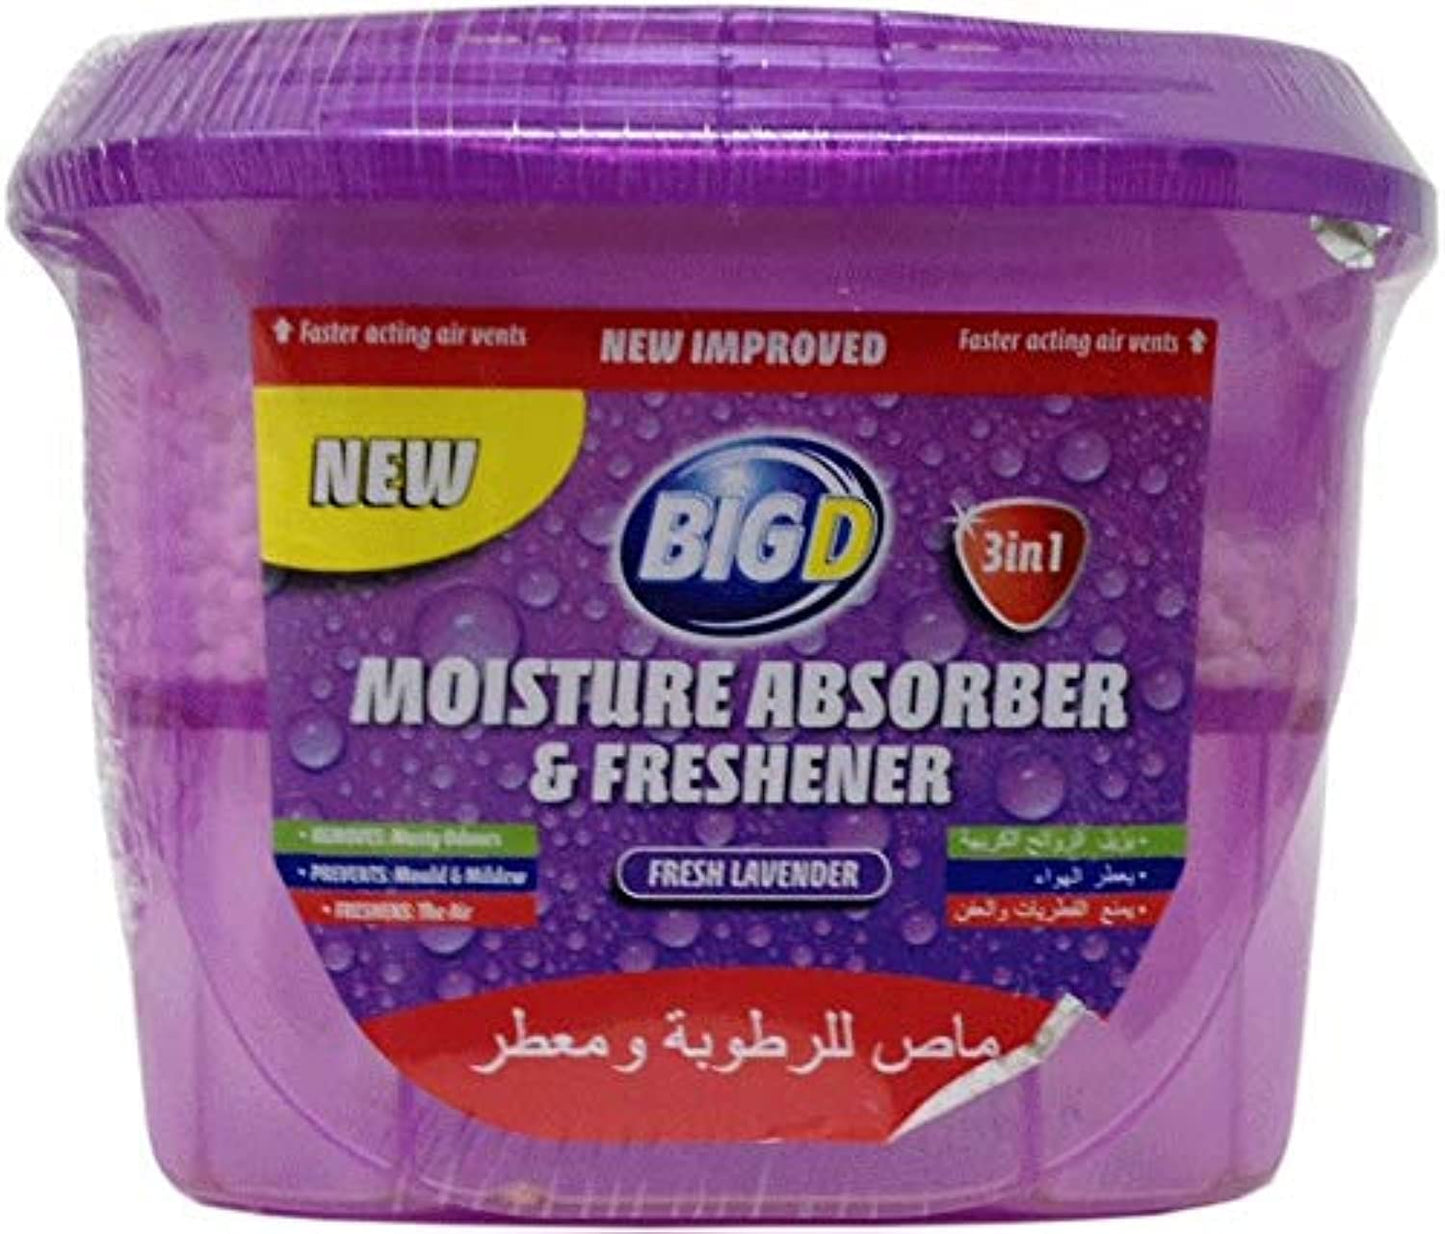 Big D Moisture Absorber And Freshener - Lavender